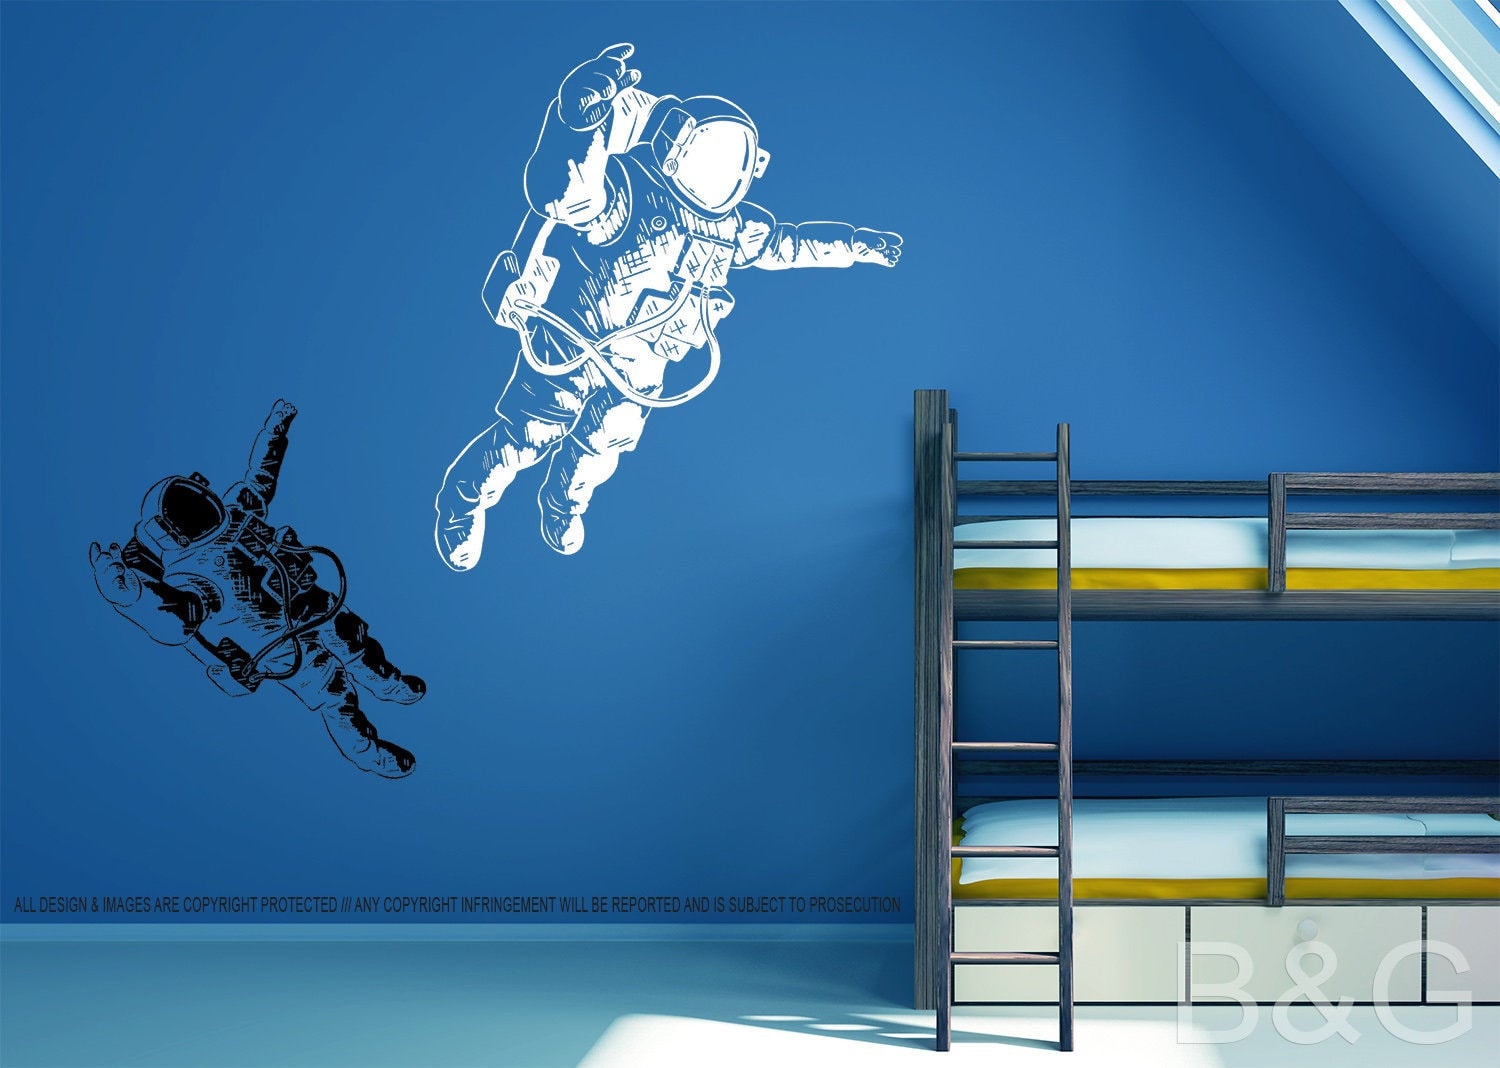 Autocollants muraux astronaute pour chambre de garçons, dessin animé  Spaceman planète extérieure créatif bricolage Art vinyle